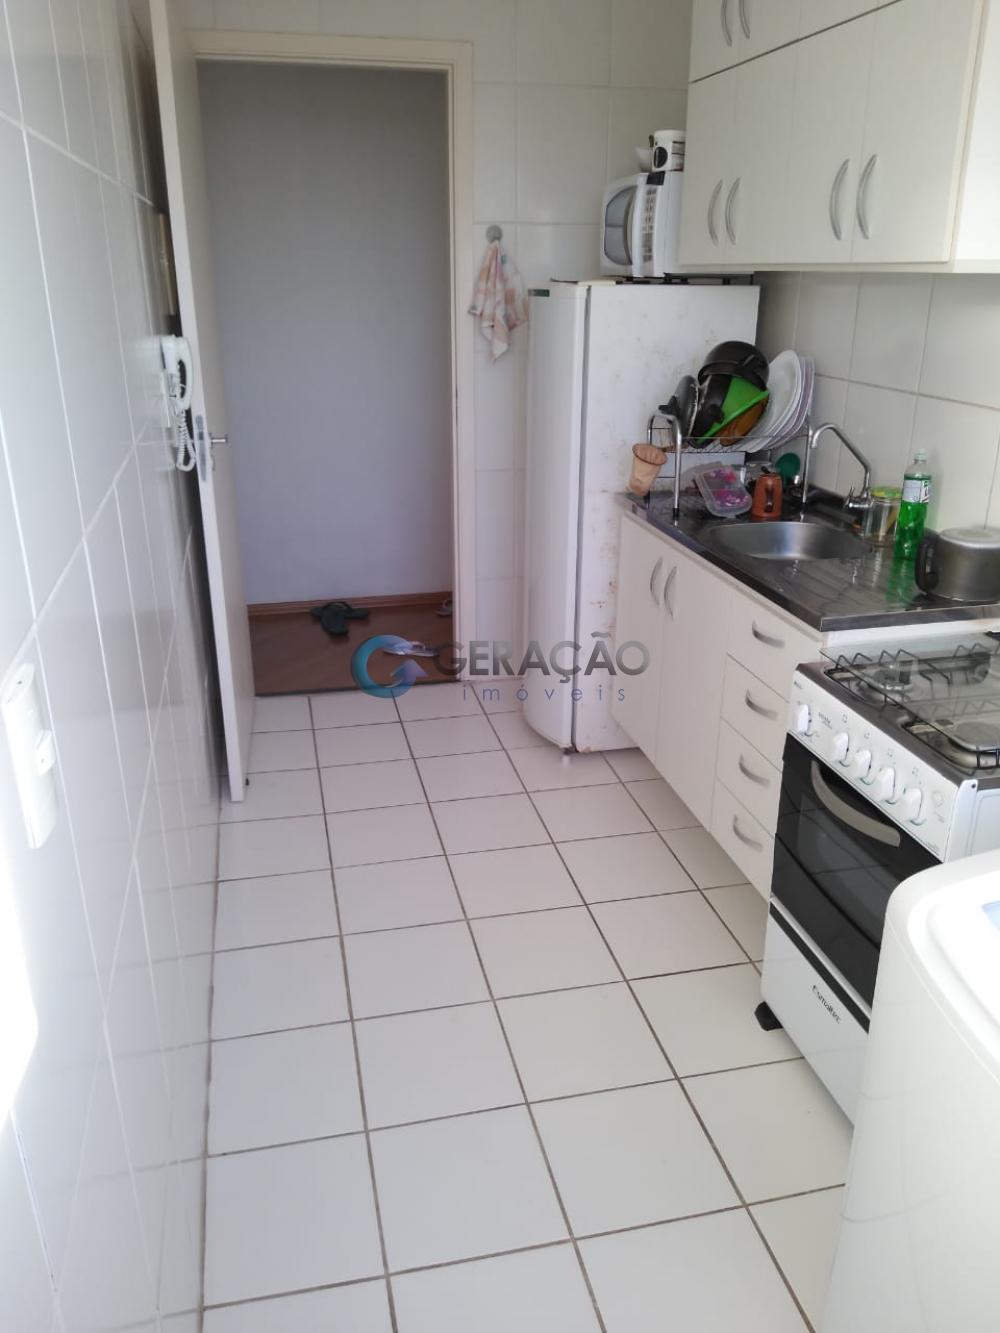 Comprar Apartamento / Padrão em São José dos Campos R$ 240.000,00 - Foto 4